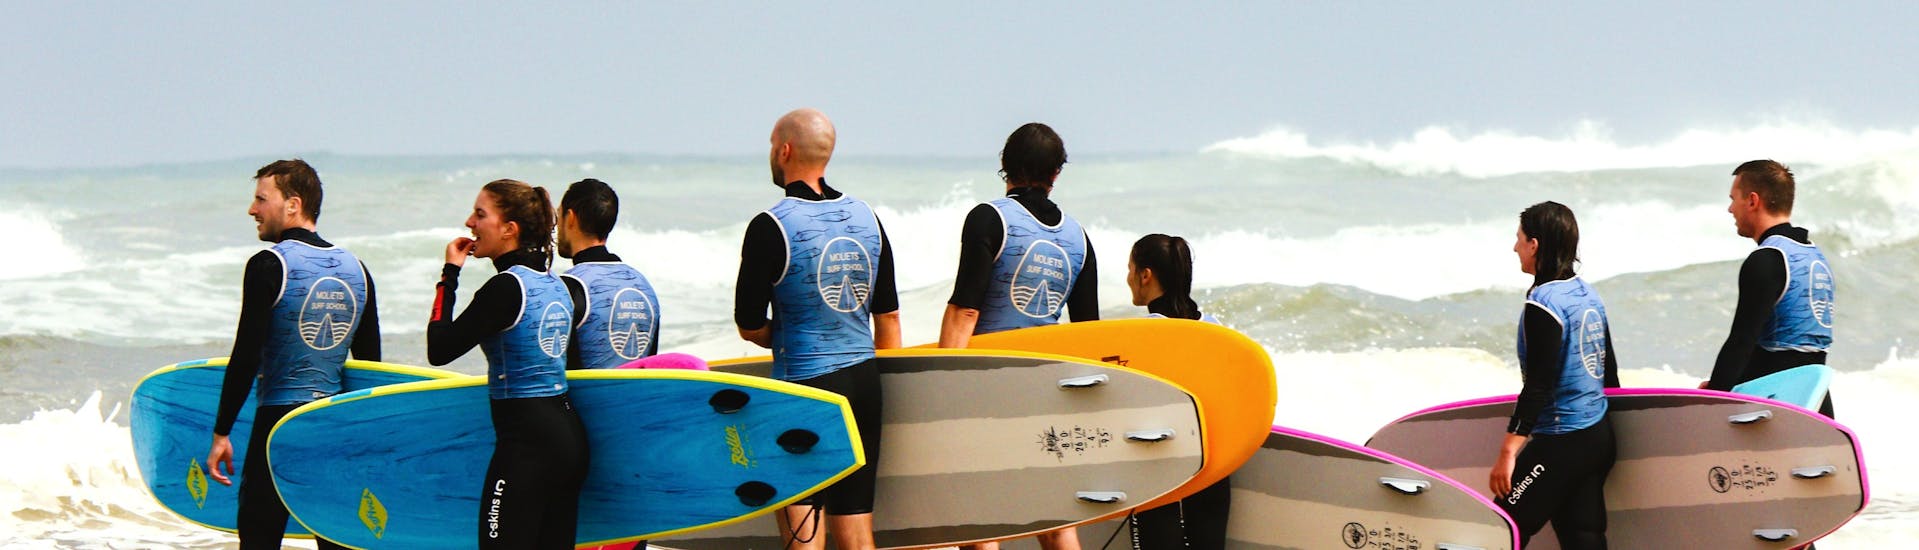 Unos niños en la playa de Moliets durante su clase de surf con Moliets Surf School.